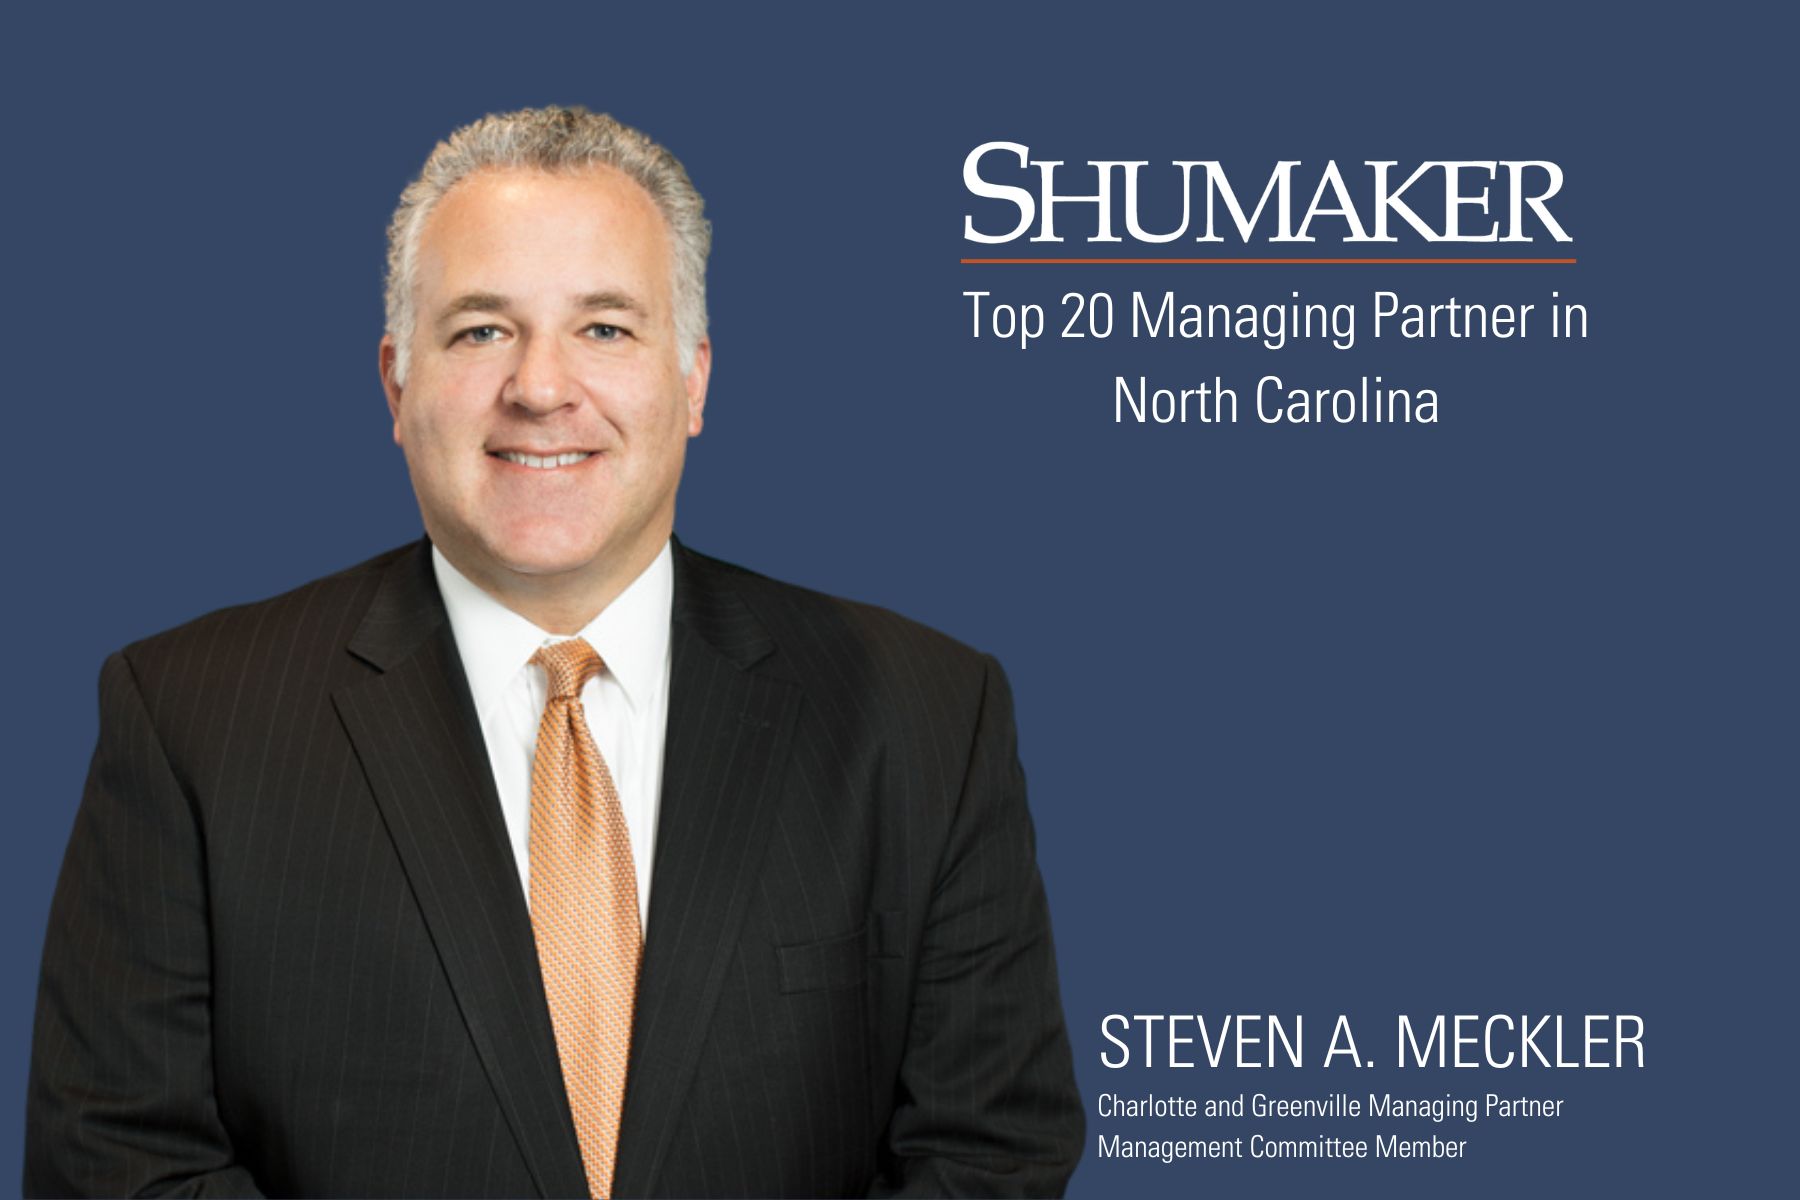 Steven A. Meckler Named Top 20 Managing Partner in North Carolina